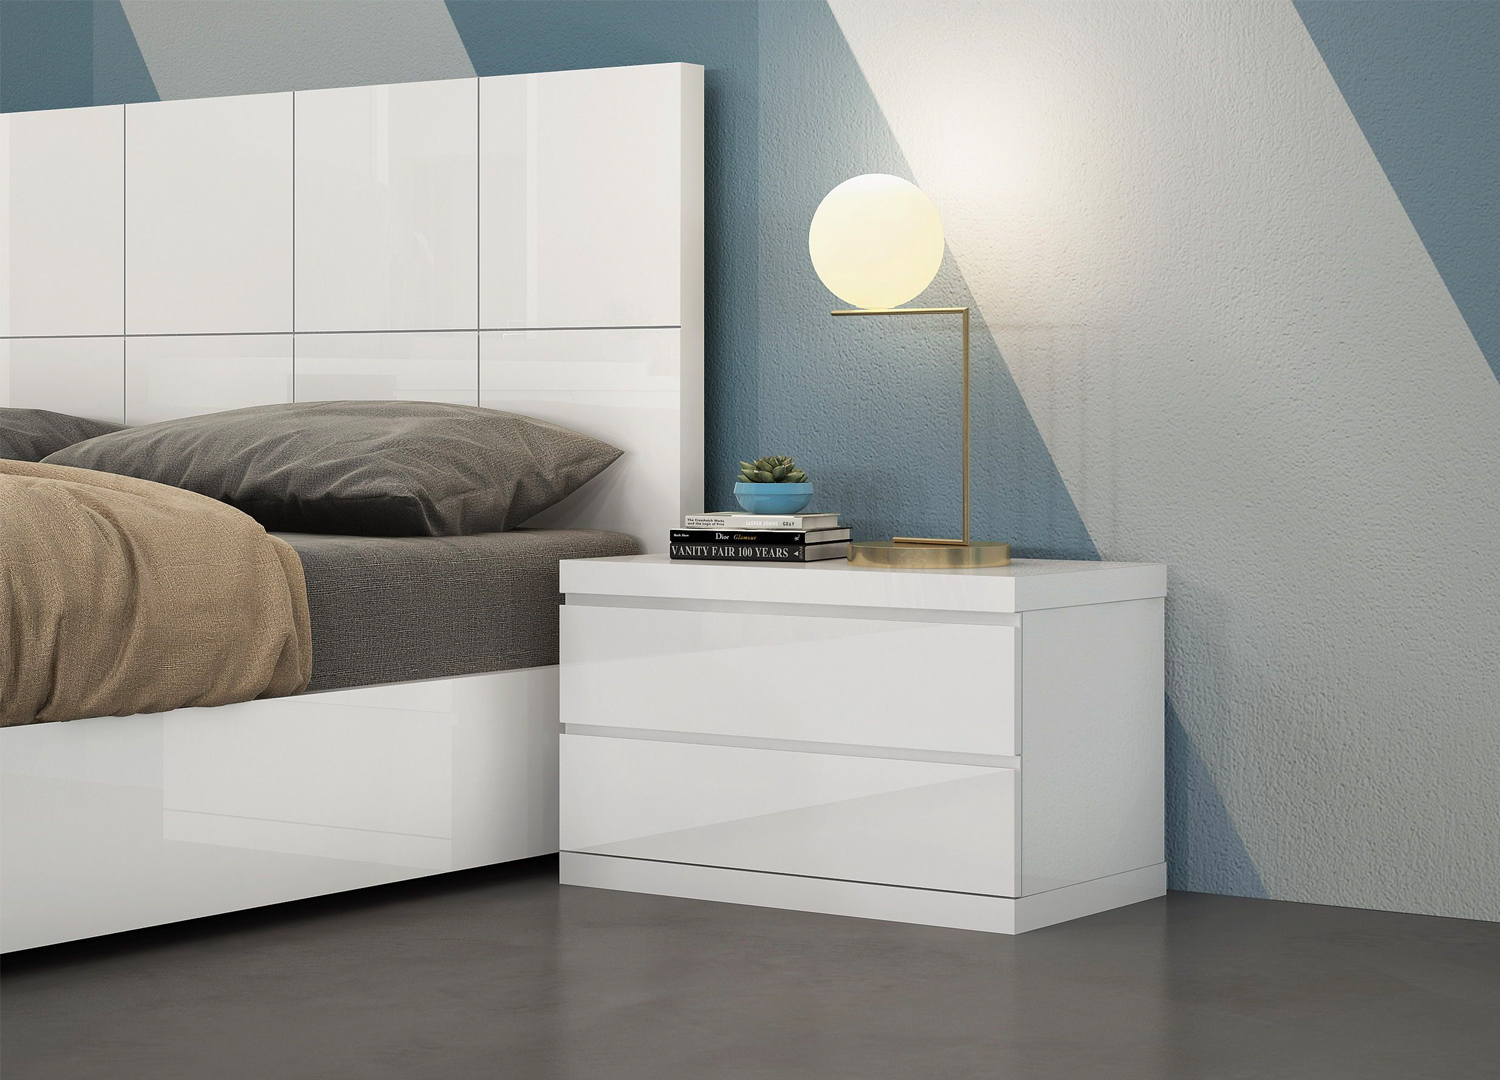 Elite Modern Bedroom Set wit Designer Headboard - Click Image to Close